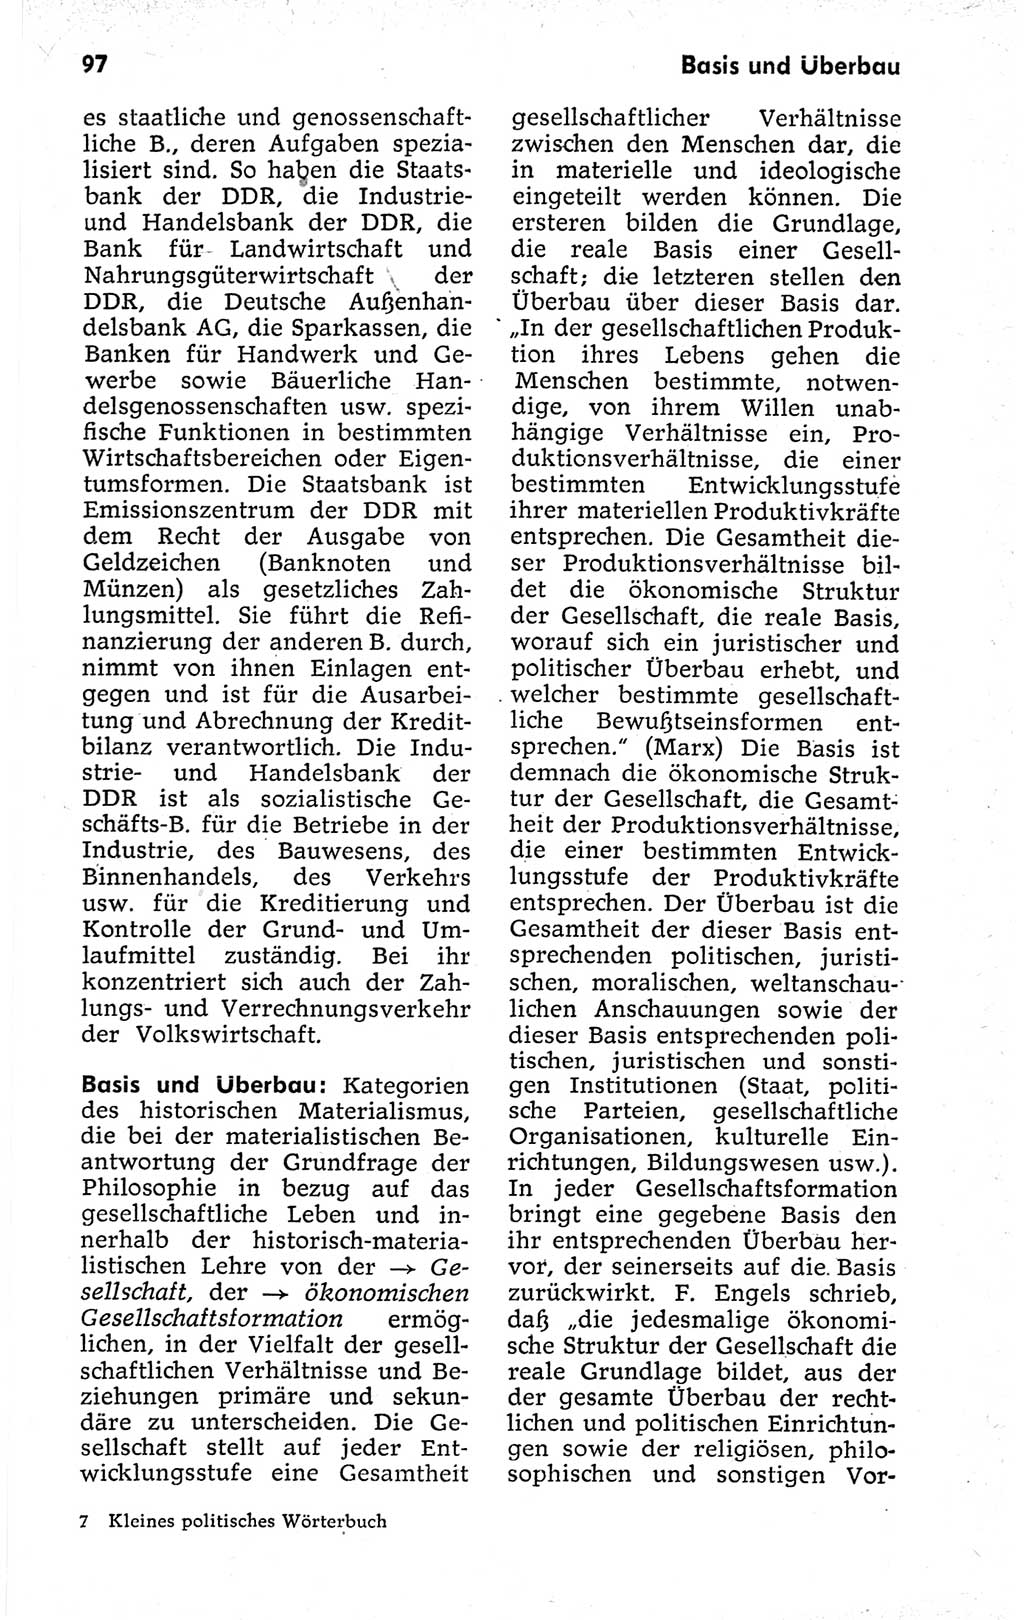 Kleines politisches Wörterbuch [Deutsche Demokratische Republik (DDR)] 1973, Seite 97 (Kl. pol. Wb. DDR 1973, S. 97)